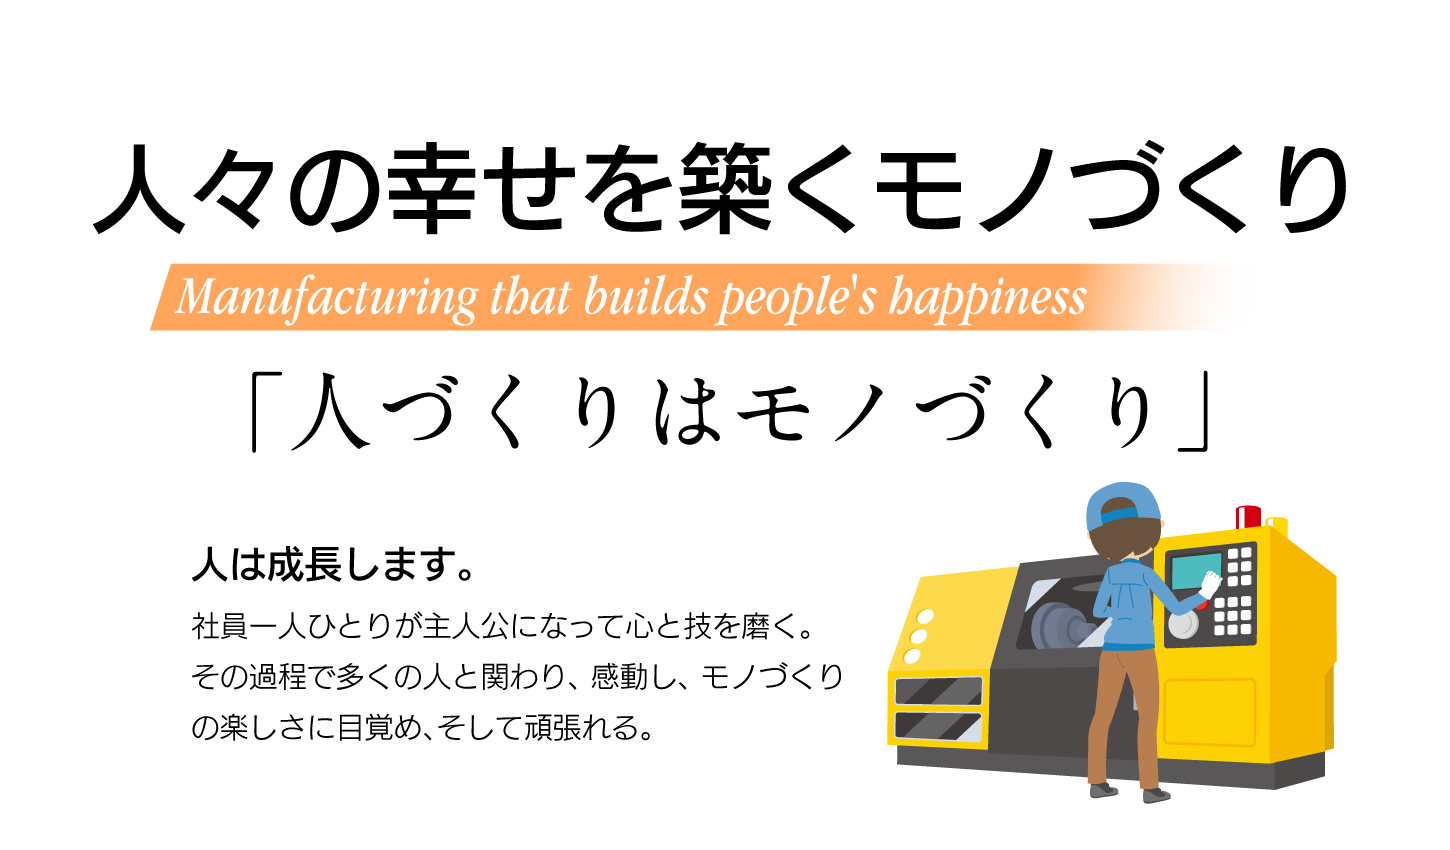 人々の幸せを築くモノづくり Manufacturing that builds people's happiness 「人づくりはモノづくり」人は成長します。社員一人ひとりが主人公になって心と技を磨く。
その過程で多くの人と関わり、感動し、モノづくりの楽しさに目覚め、そして頑張れる。